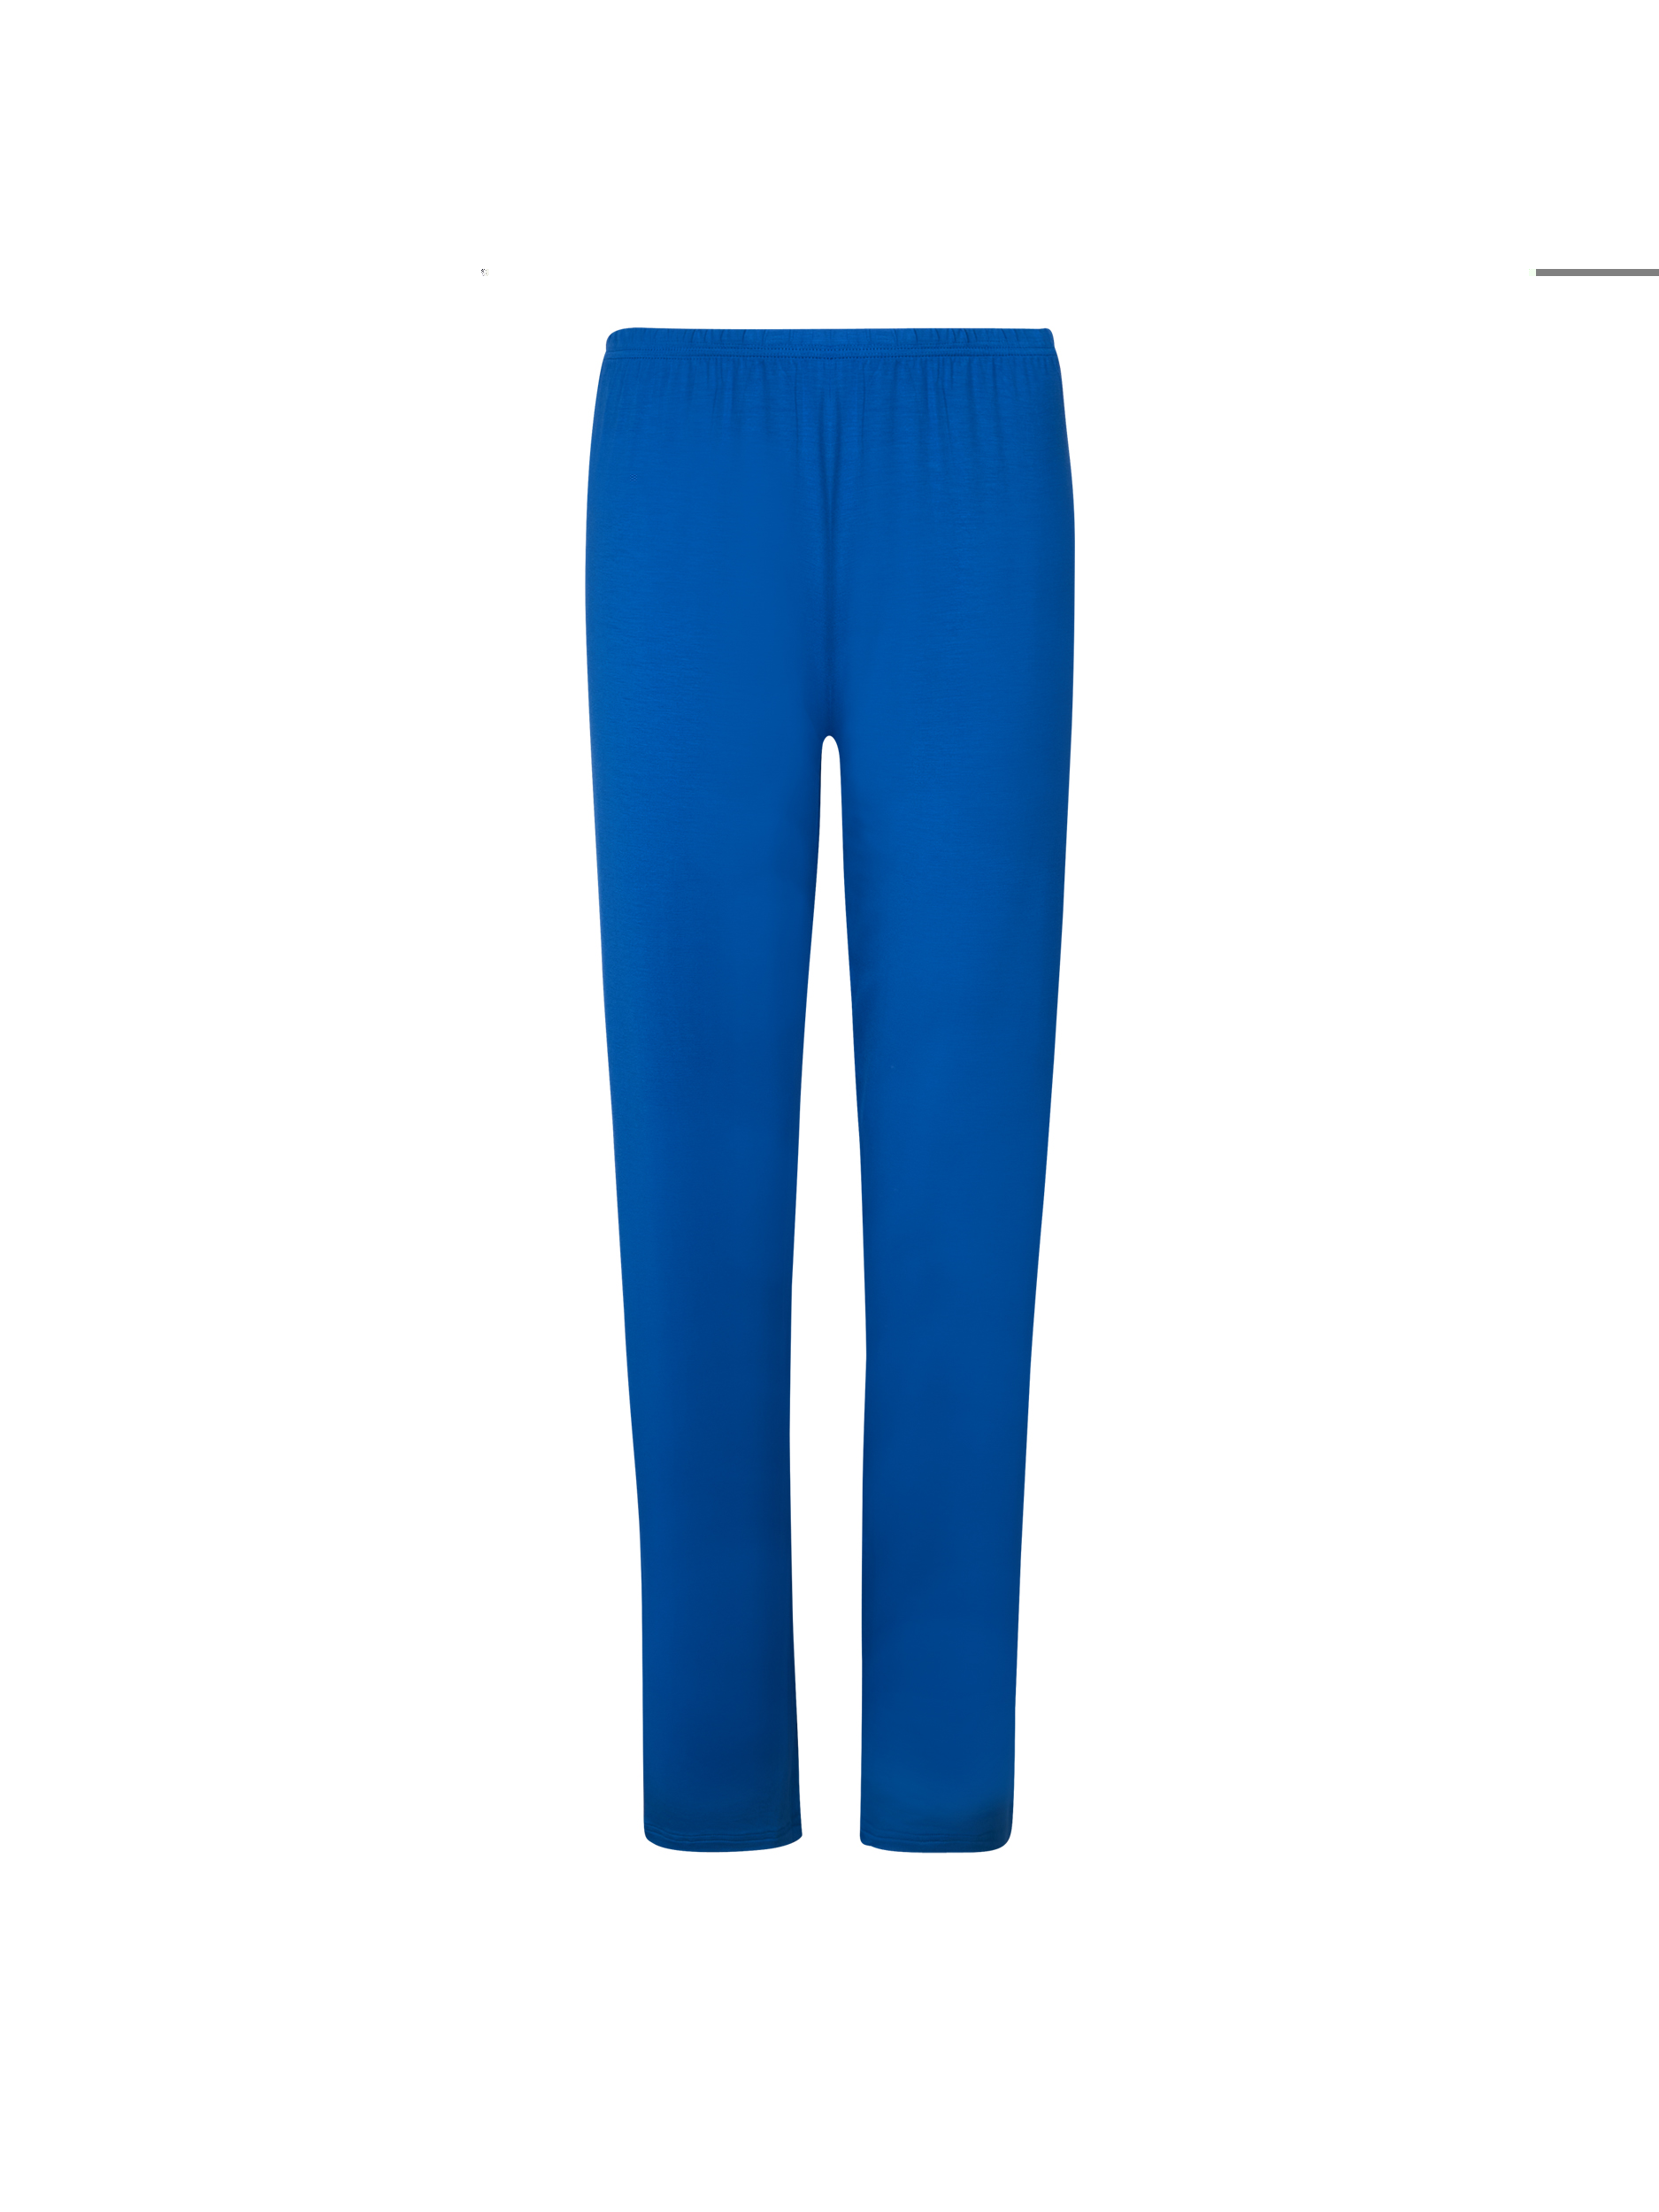 Pantalone micromodal ENA0806 bluette